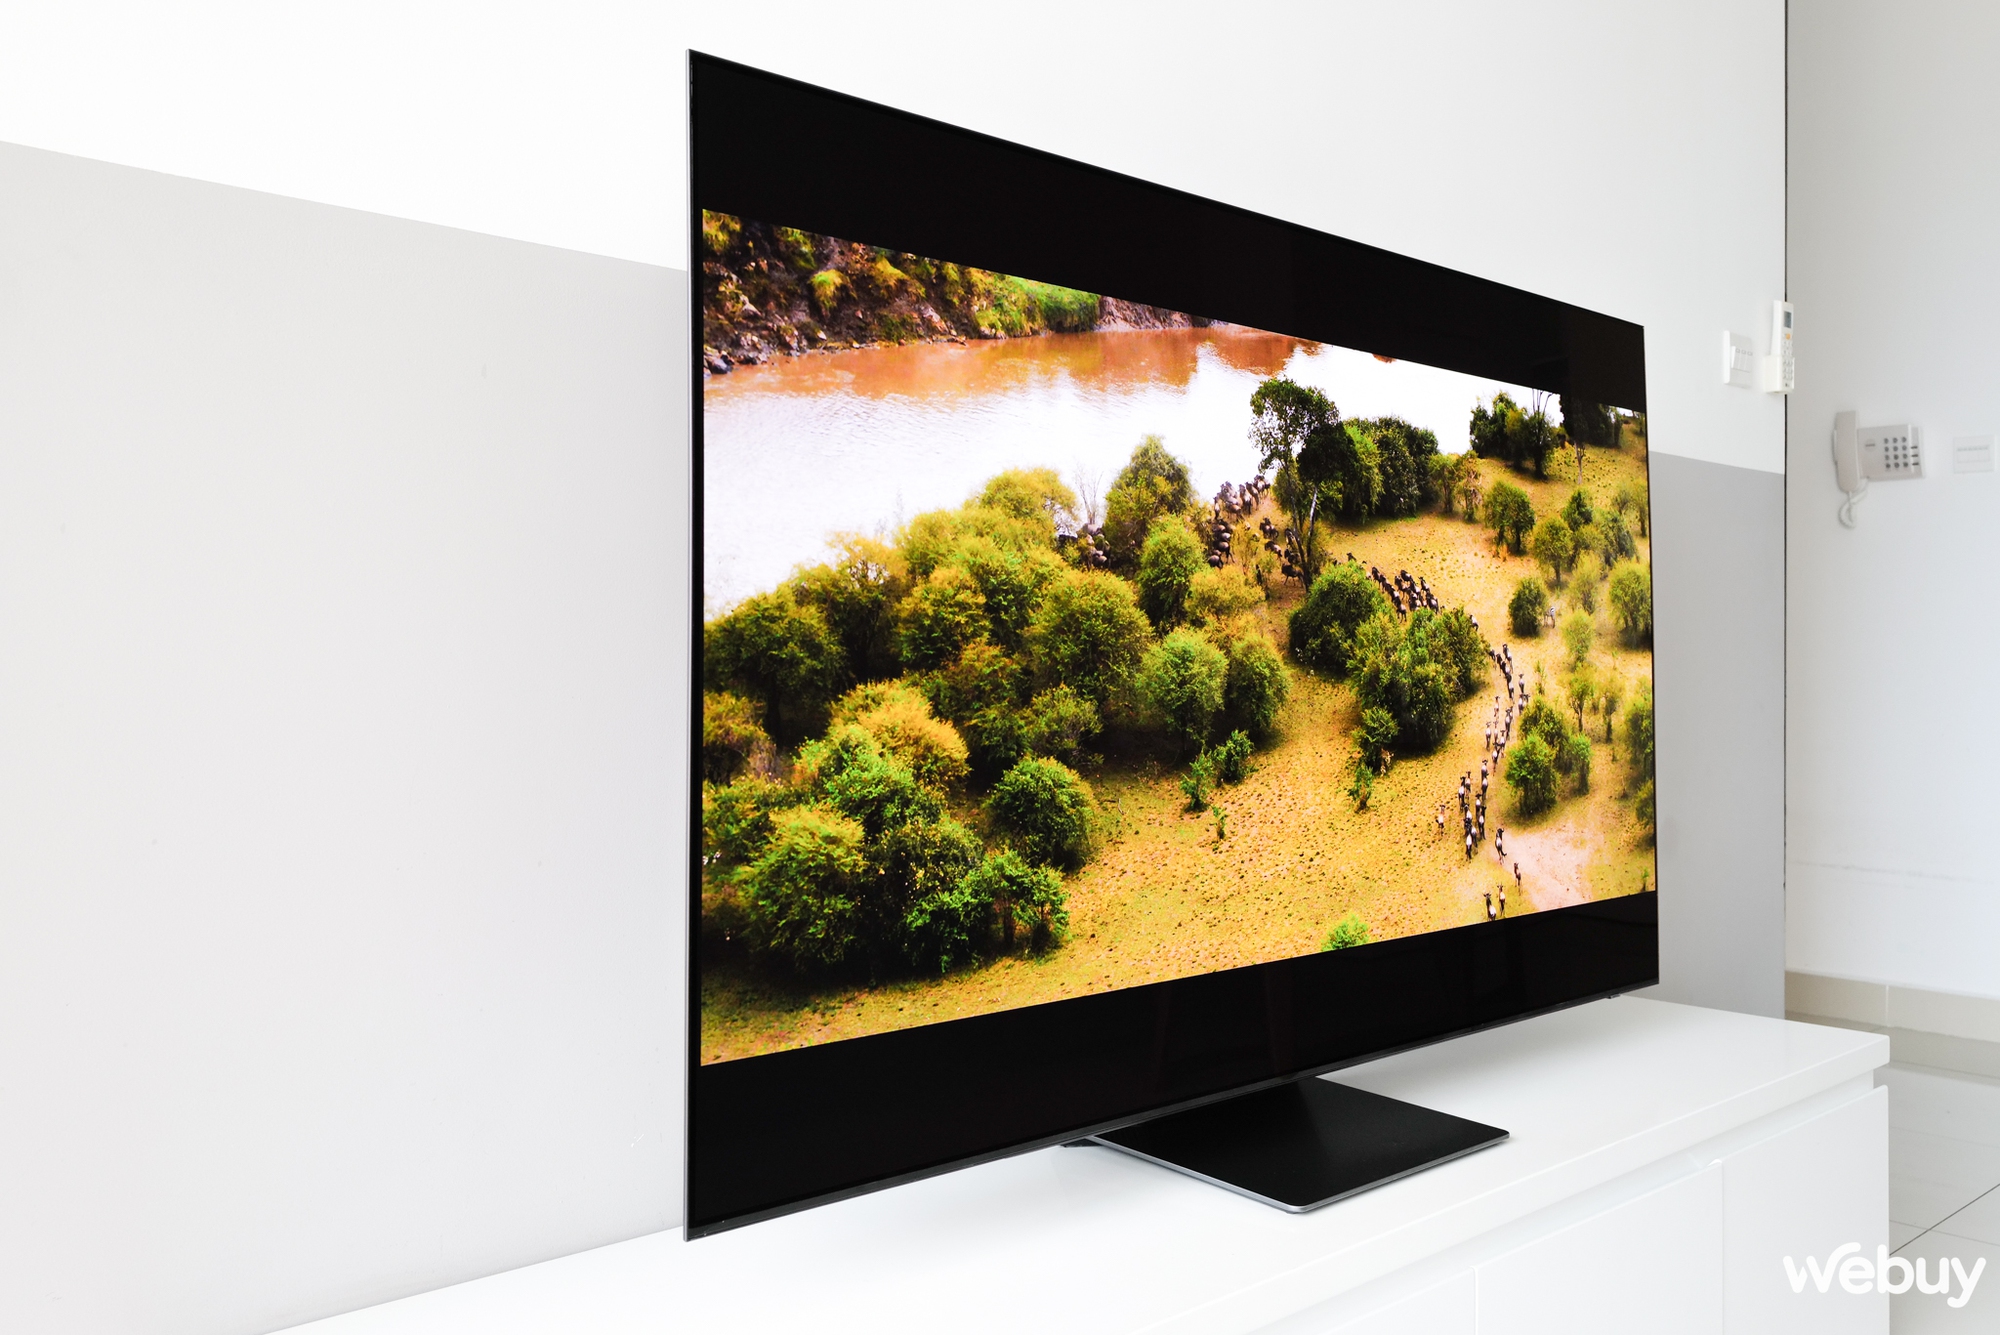 Trải nghiệm nhanh chiếc TV mới nhất từ Samsung: Không phải QLED thân thuộc nhưng chất lượng lại vượt mong đợi - Ảnh 13.